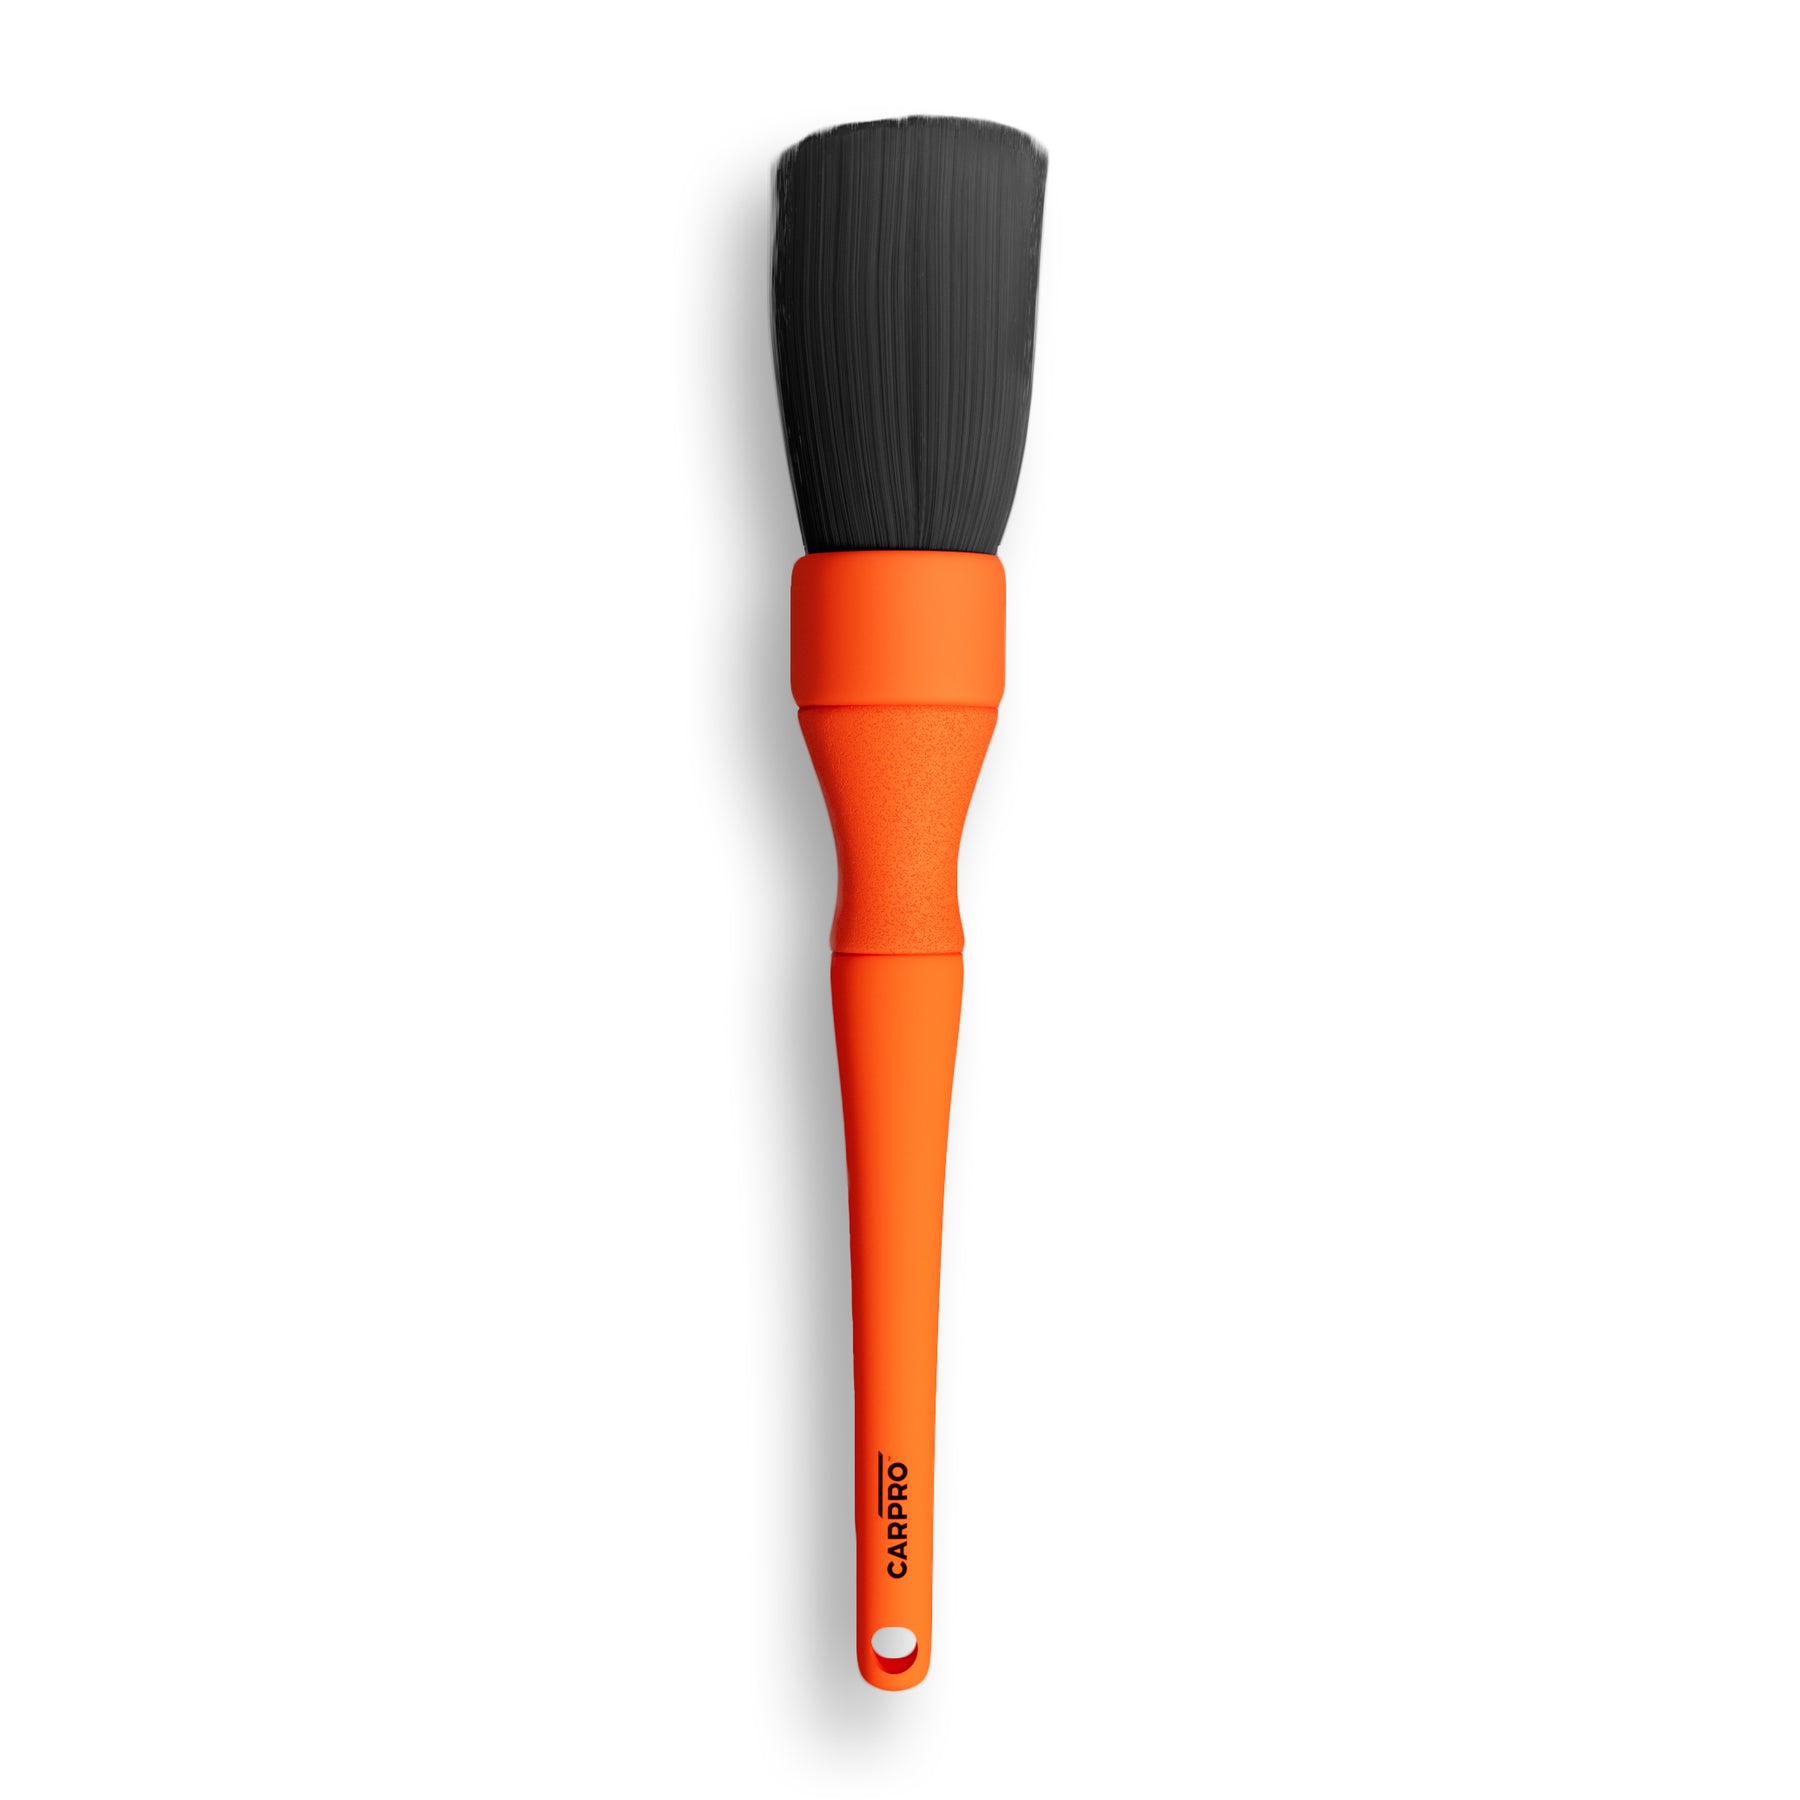 Spazzola extra-large CARPRO Detailing Brush XL con setole nere e manico arancione, ideale per la pulizia approfondita delle superfici del veicolo.